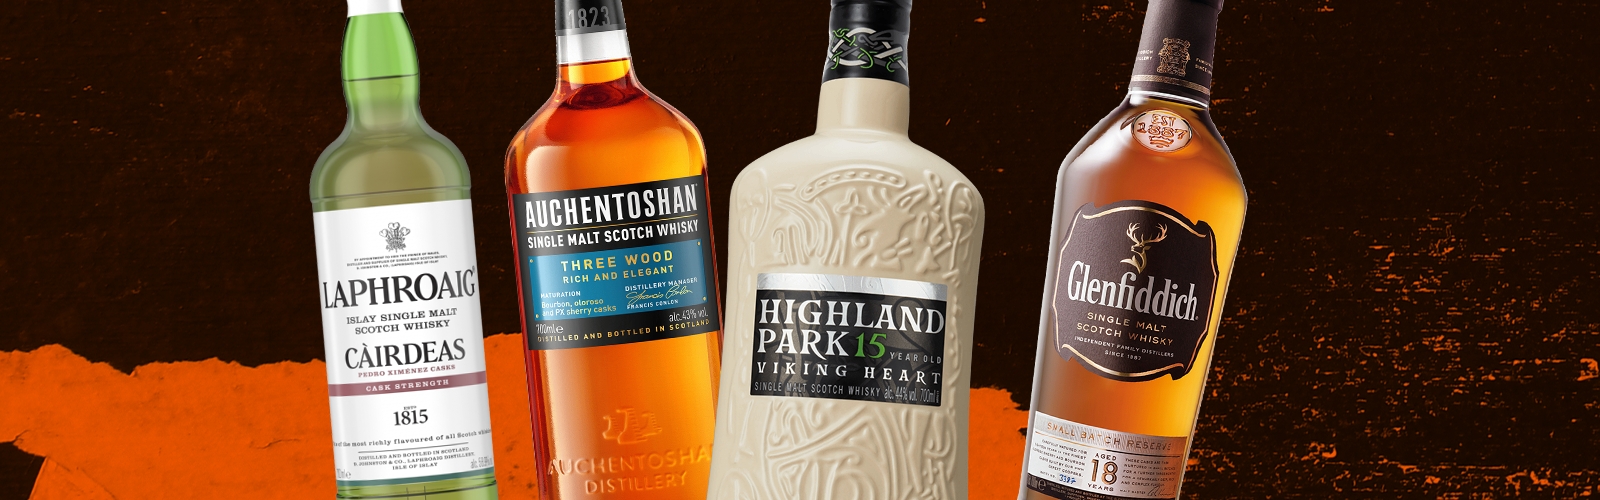 etik TVsæt Elevator Top 10 Best Bottles Of Scotch Whisky For $100-$125